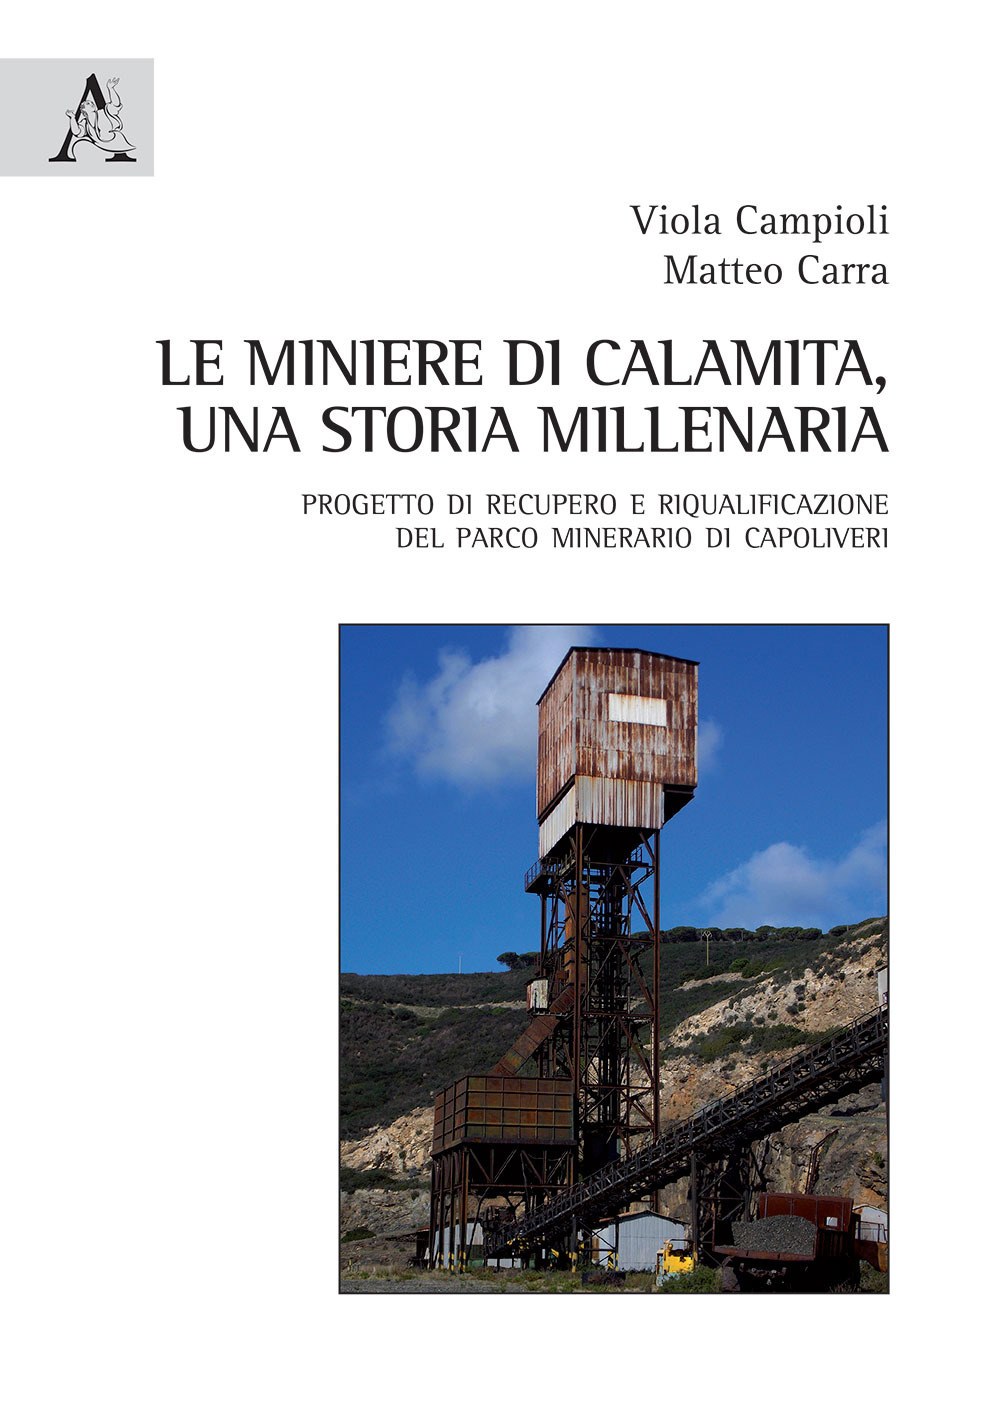 Le miniere di Calamita. Una storia millenaria. Progetto di recupero e riqualificazione del parco minerario di Capoliveri, Isola d'Elba